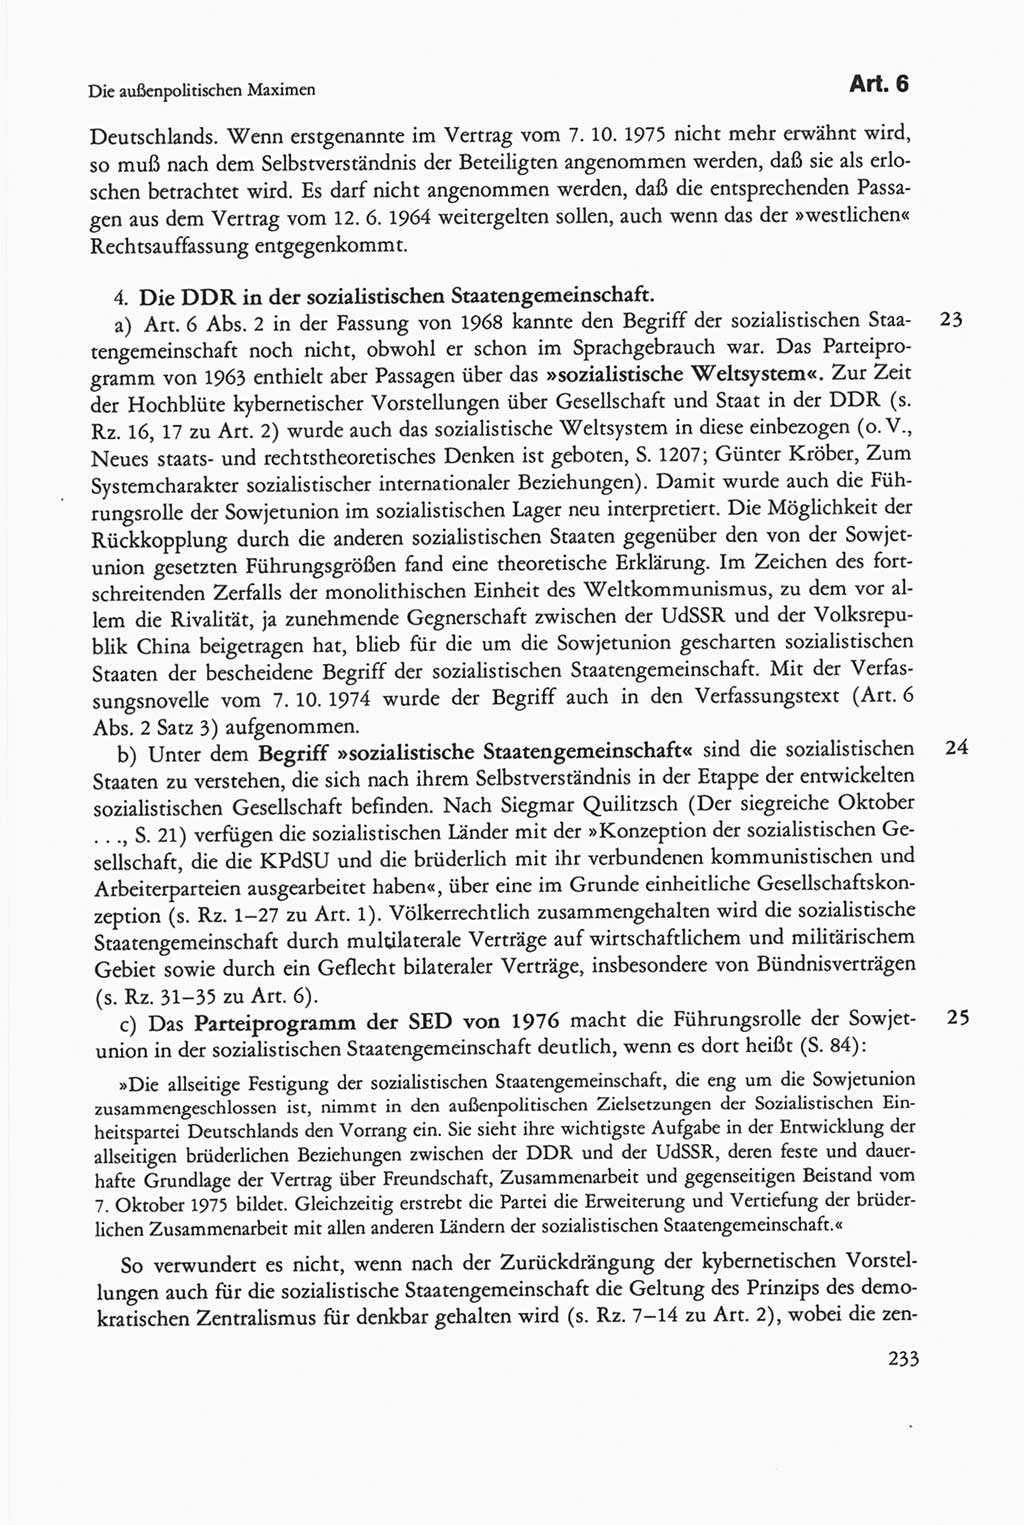 Die sozialistische Verfassung der Deutschen Demokratischen Republik (DDR), Kommentar mit einem Nachtrag 1997, Seite 233 (Soz. Verf. DDR Komm. Nachtr. 1997, S. 233)